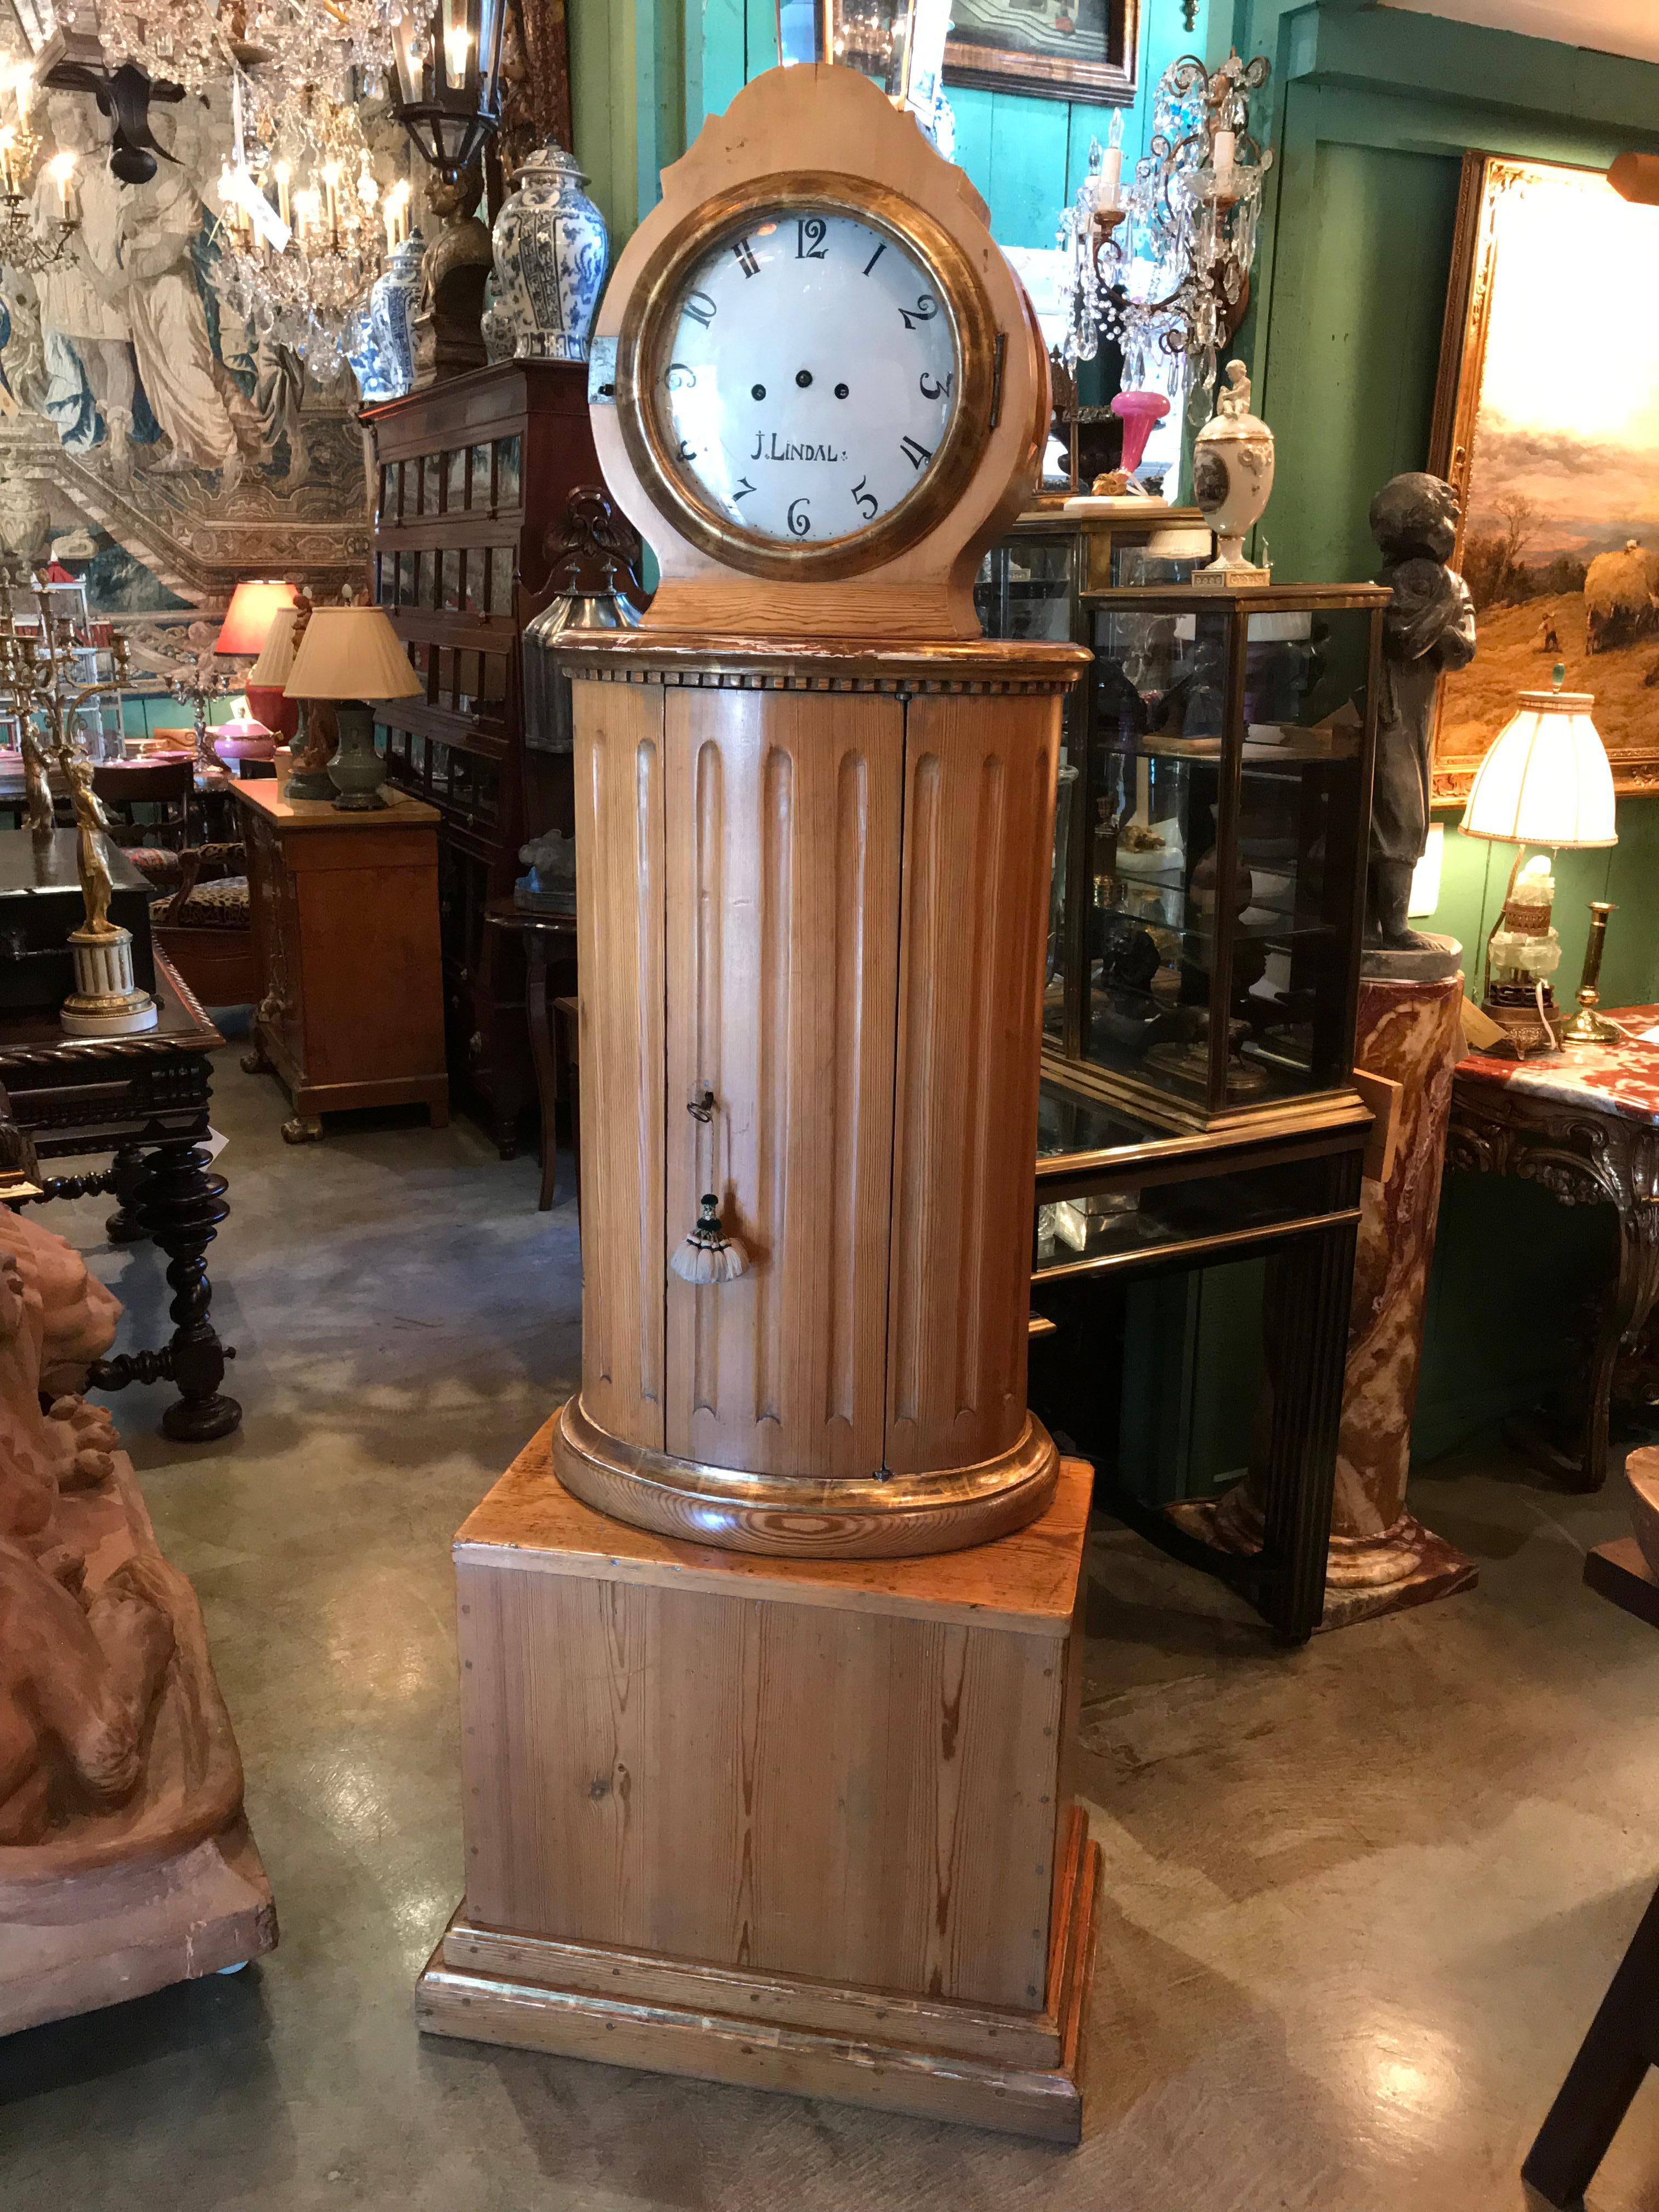 Une belle horloge en pin suédois du début du 19e siècle. 
Horloge de grand-mère en bois de pin sculptée à la main, avec toute la mécanique et la quincaillerie d'origine  la crémaillère les roues de la sonnerie le pendule les ressorts le cadran